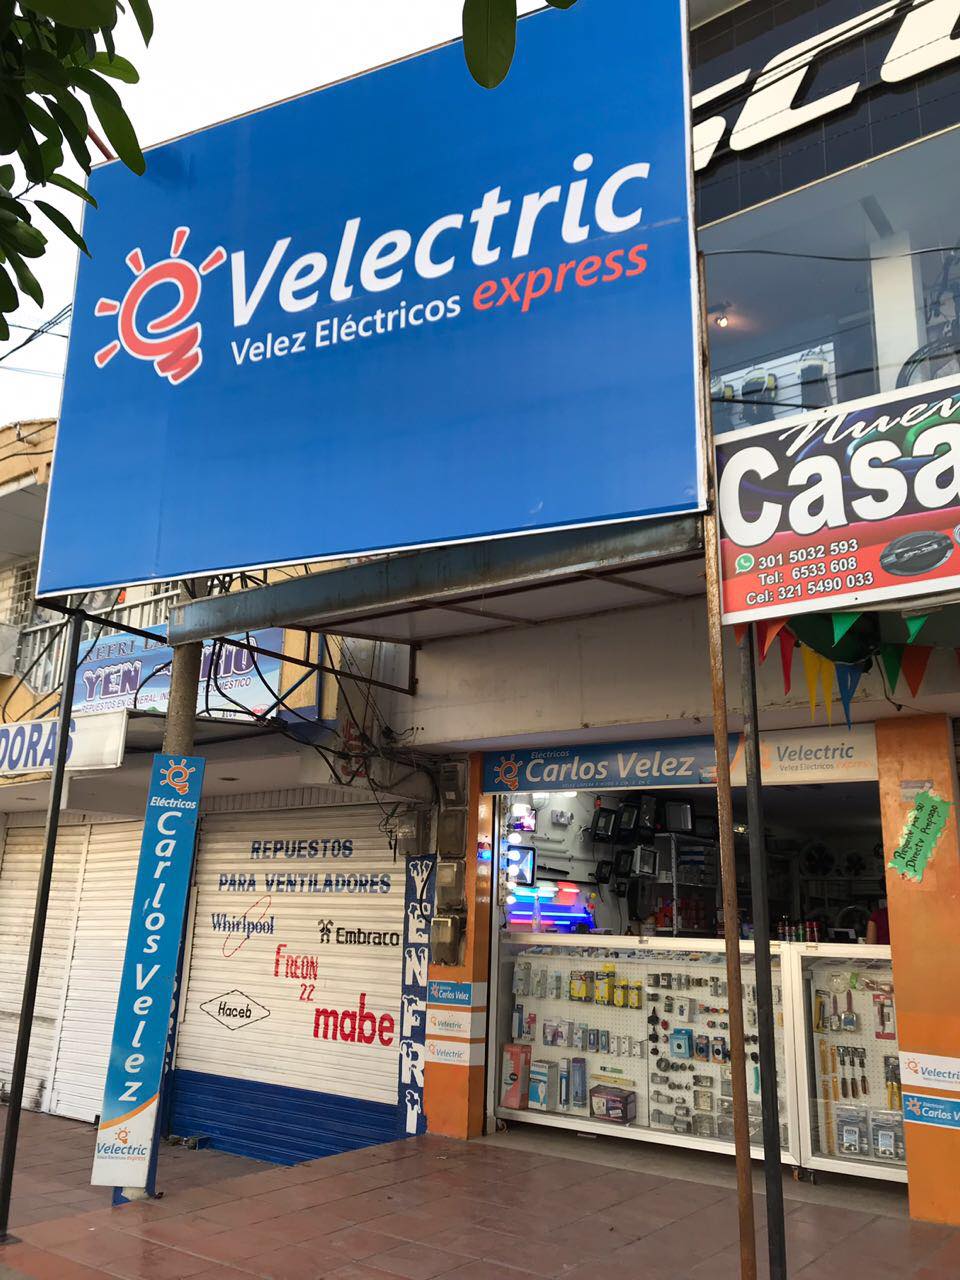 Velectric Velez Electricos